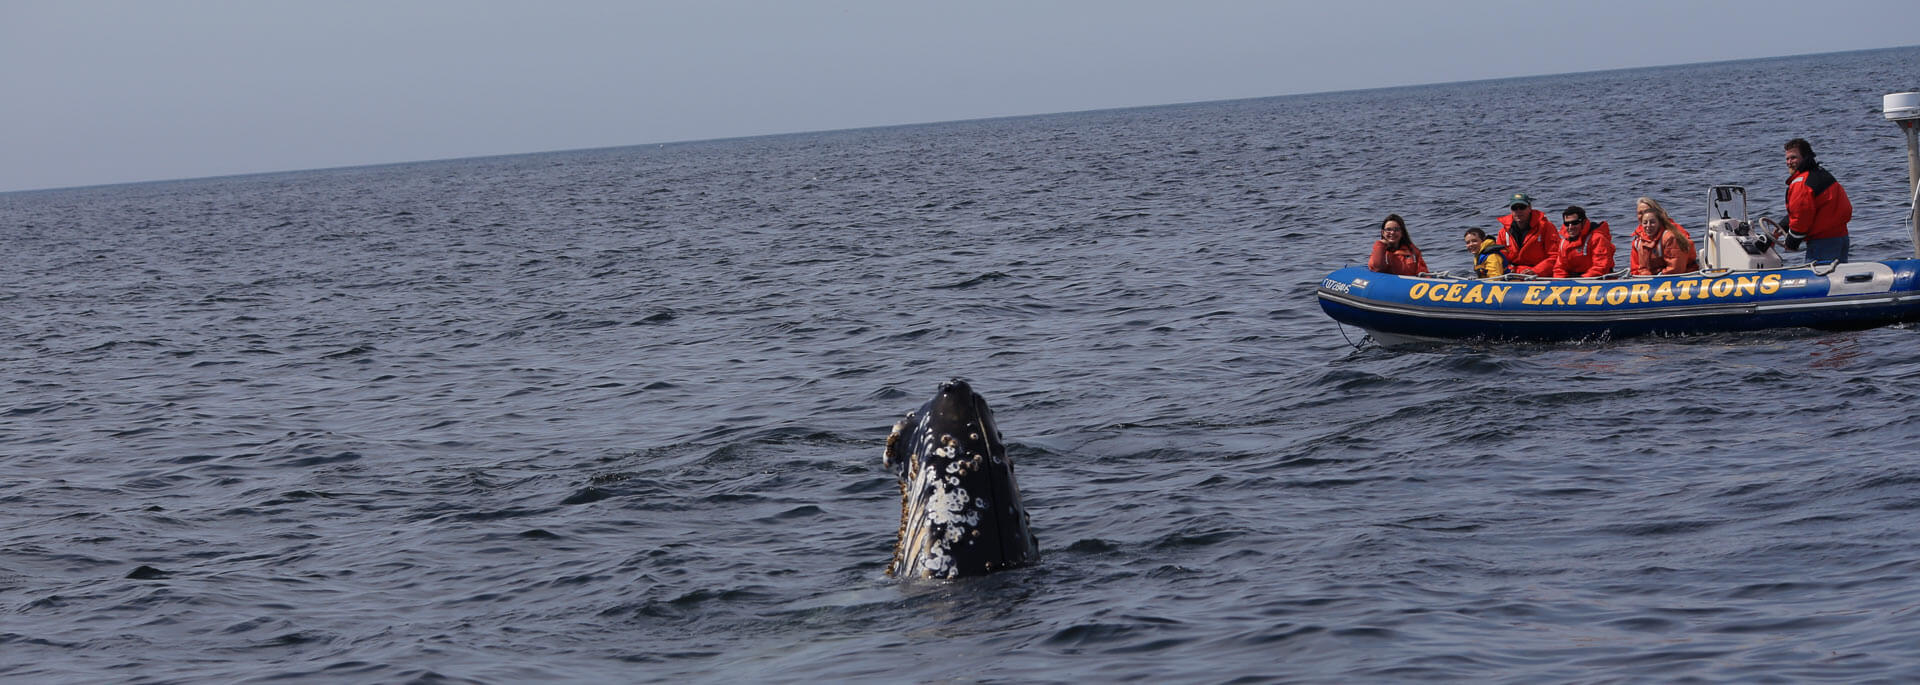 Fotos: Wale gucken in Nova Scotia